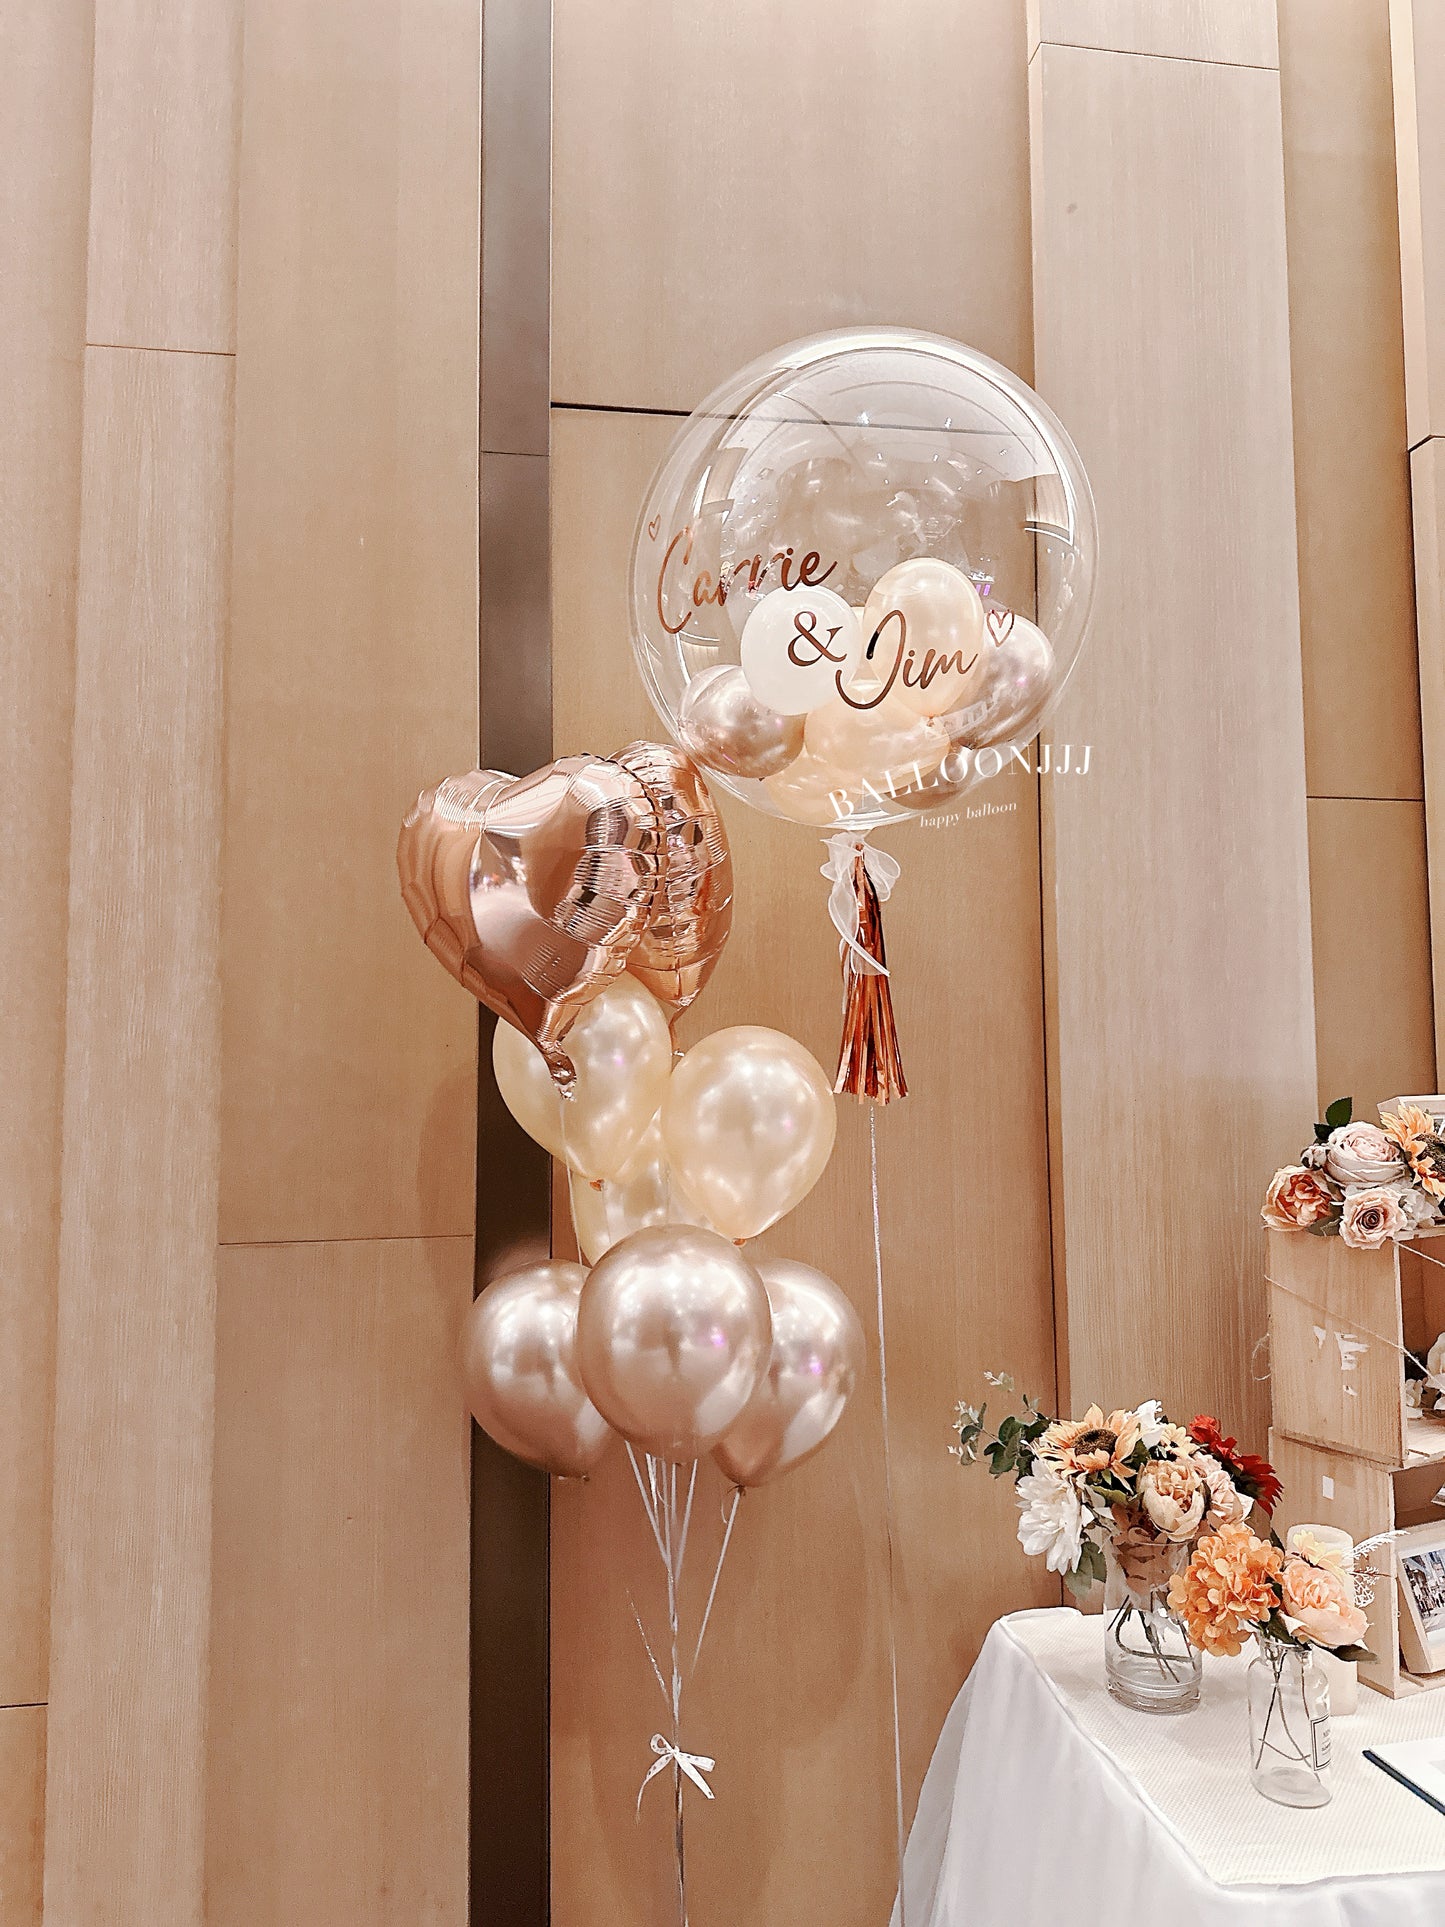 婚禮氣球套裝(婚禮首選）Wedding Balloon Bouquet Set